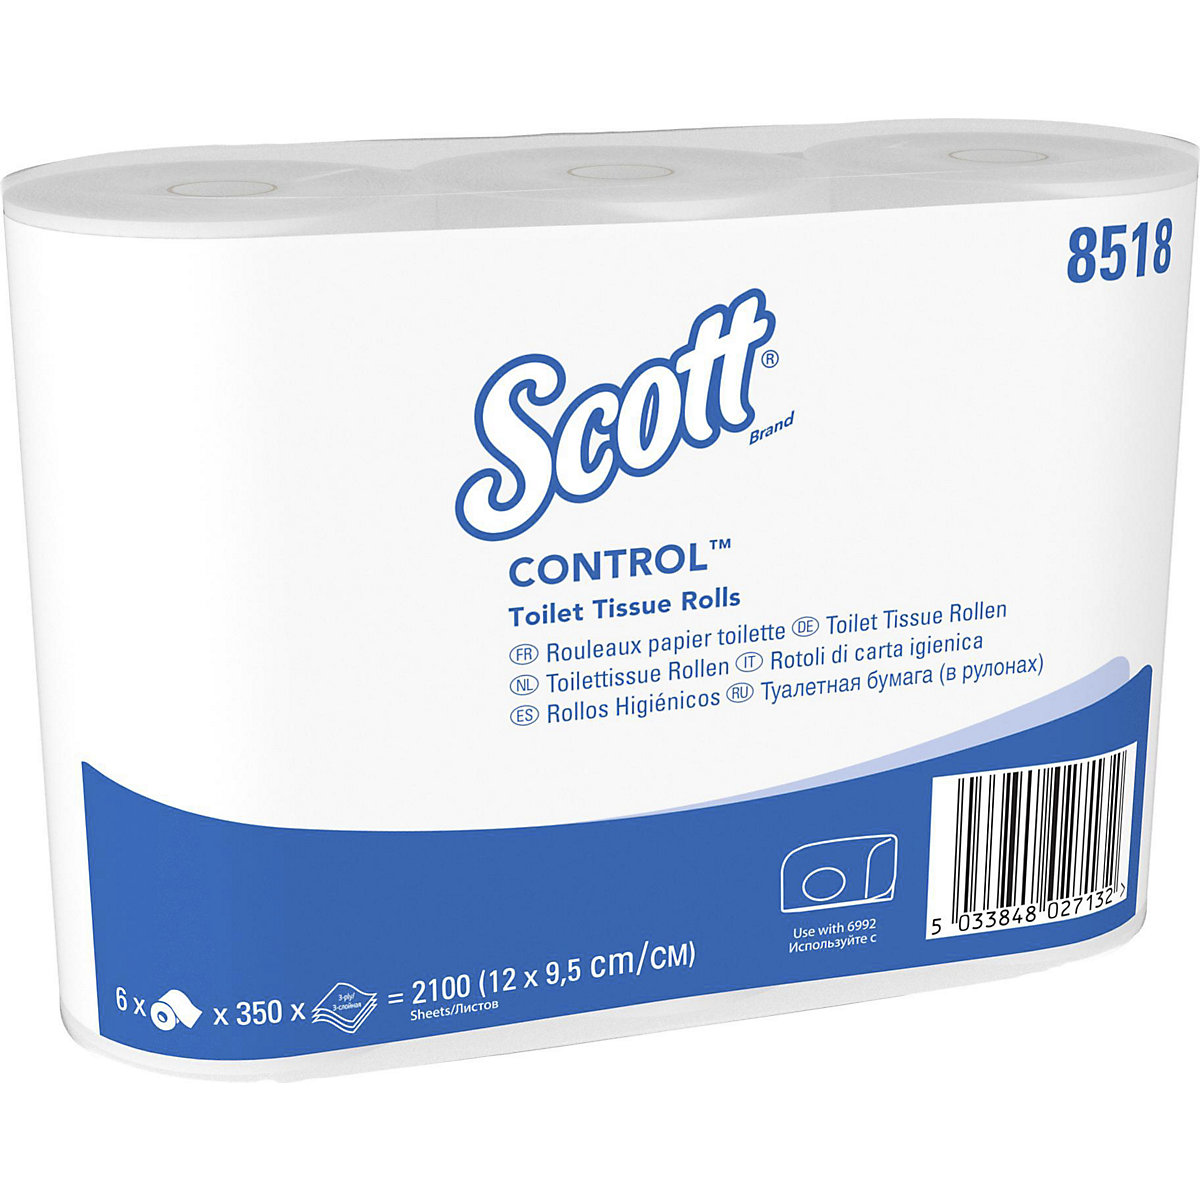 Standardní toaletní papír Scott® CONTROL™ – Kimberly-Clark